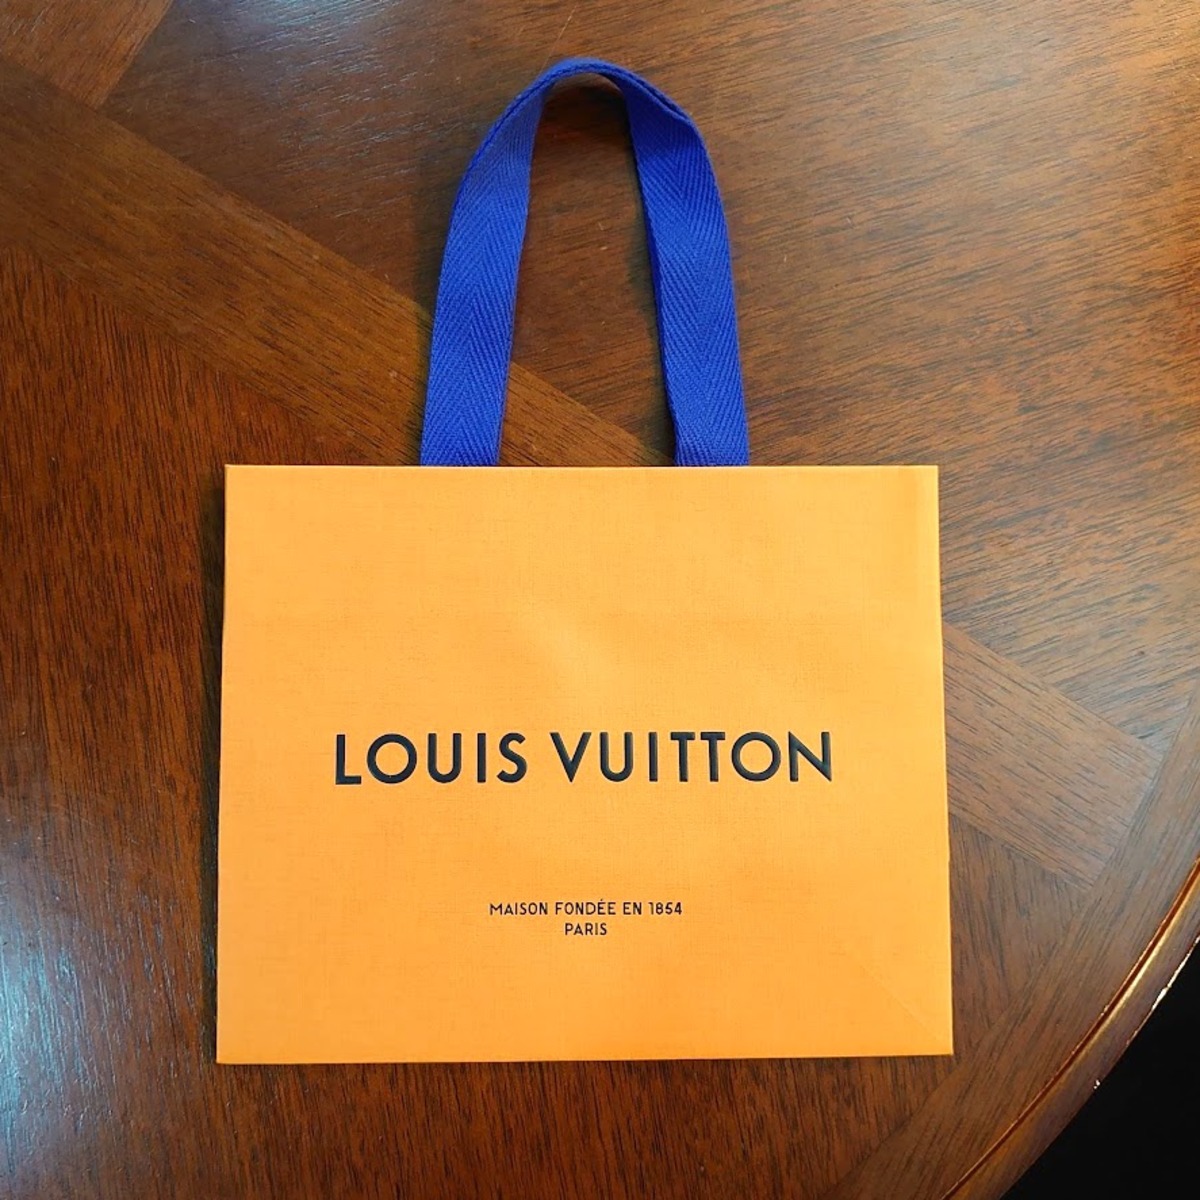 Sサイズ1枚 LOUISVUITTON ルイヴィトン オレンジ ショッパー 紙袋 送料